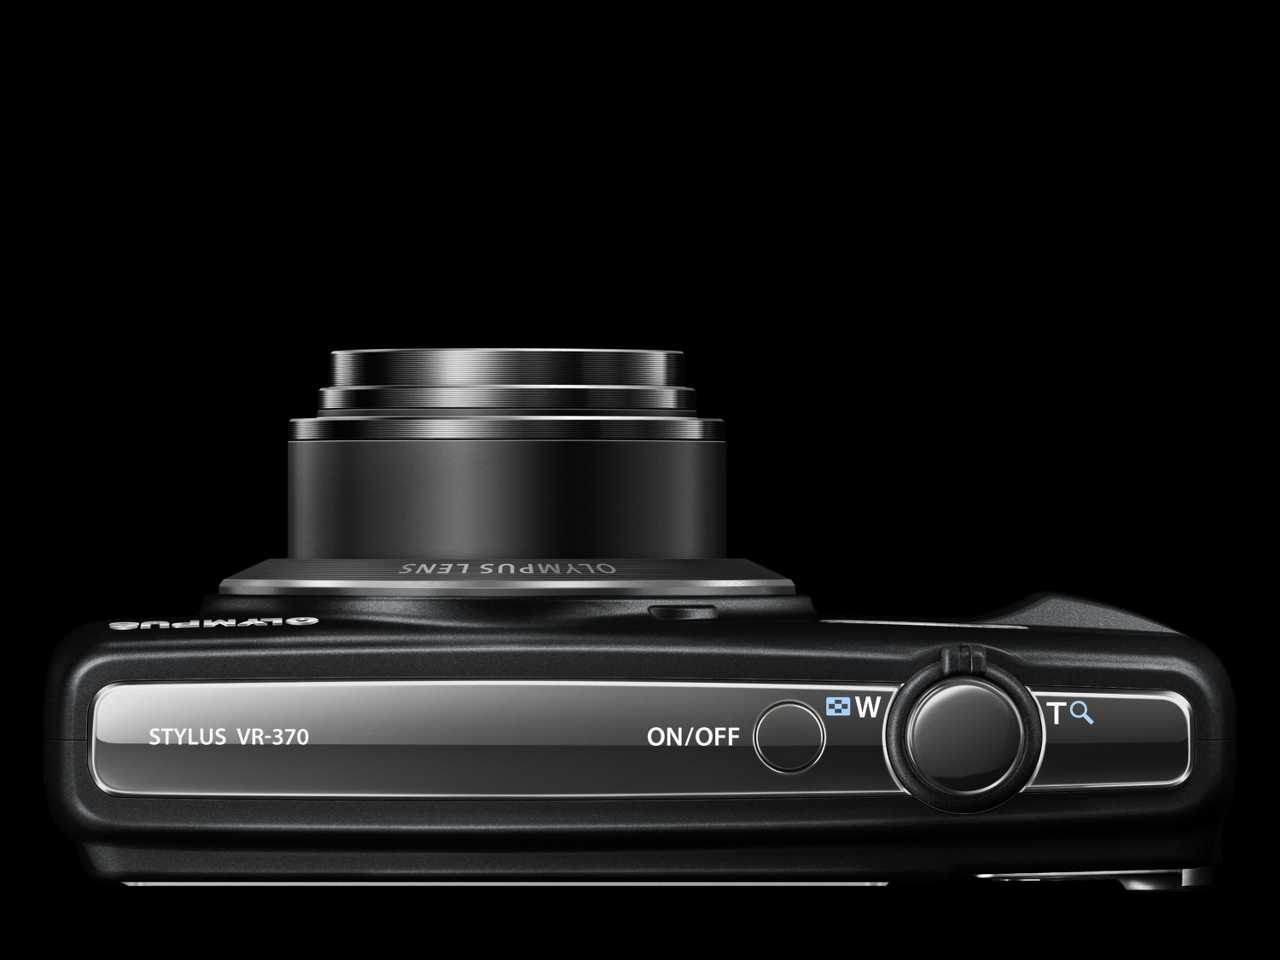 Olympus vr-370 (черный) - купить , скидки, цена, отзывы, обзор, характеристики - фотоаппараты цифровые